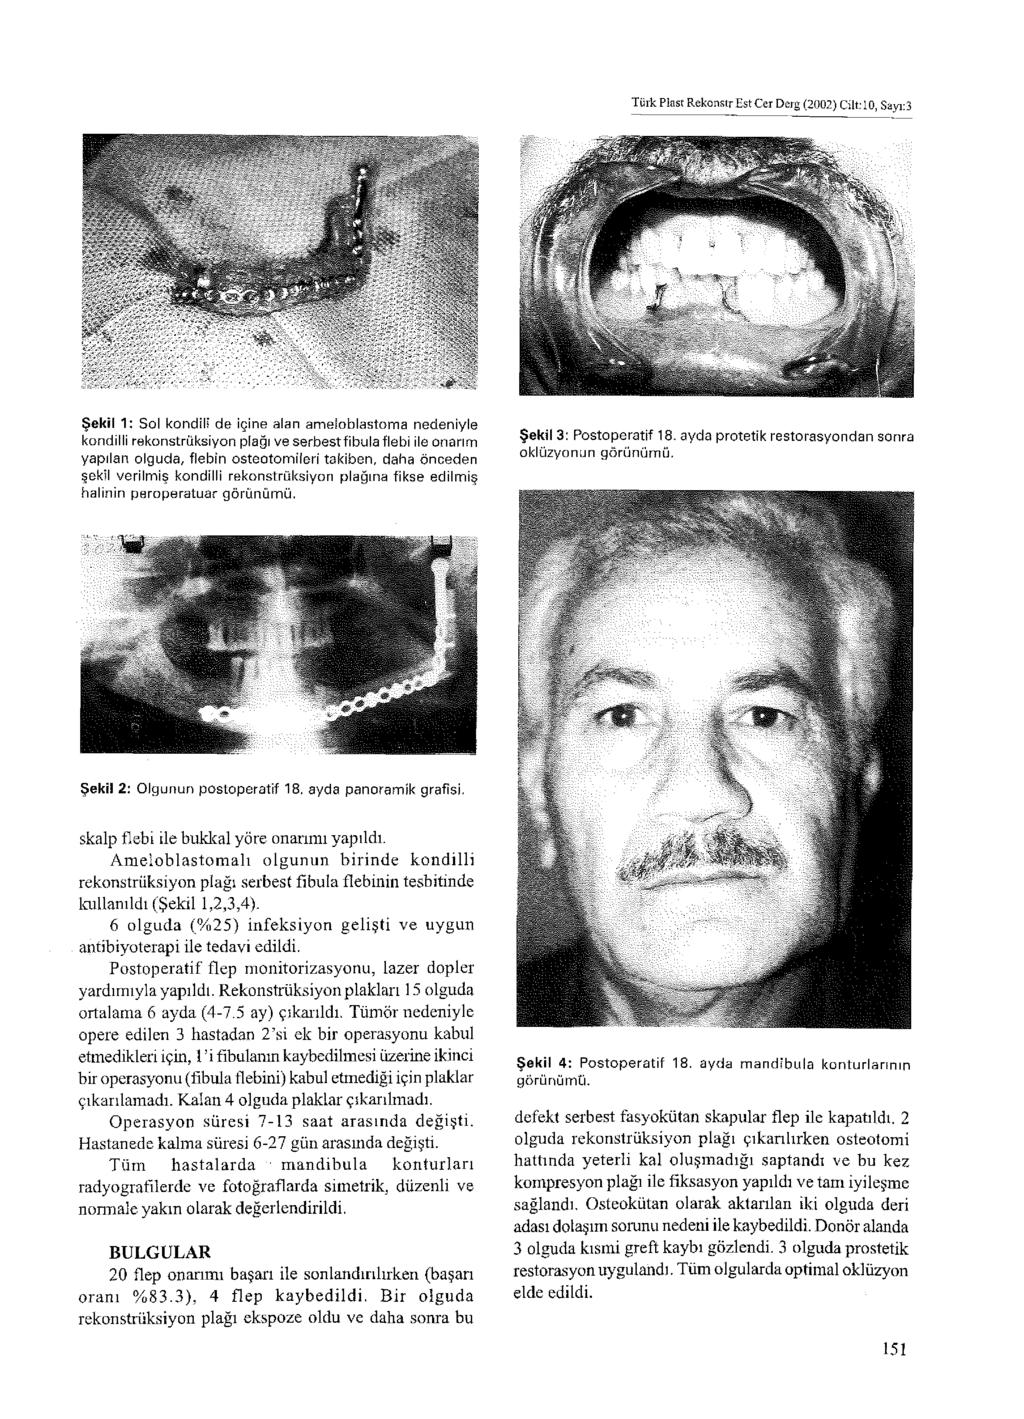 Türk Plast Rekonstr Es t Cer D erg (2002) Cilt: 10, Sayı:3 Şekil 1: Sol kondili de içine alan ameloblastoıma nedeniyle kondilli rekonstrüksiyon plağı ve serbestfibula flebi ile onarım yapılan olguda,